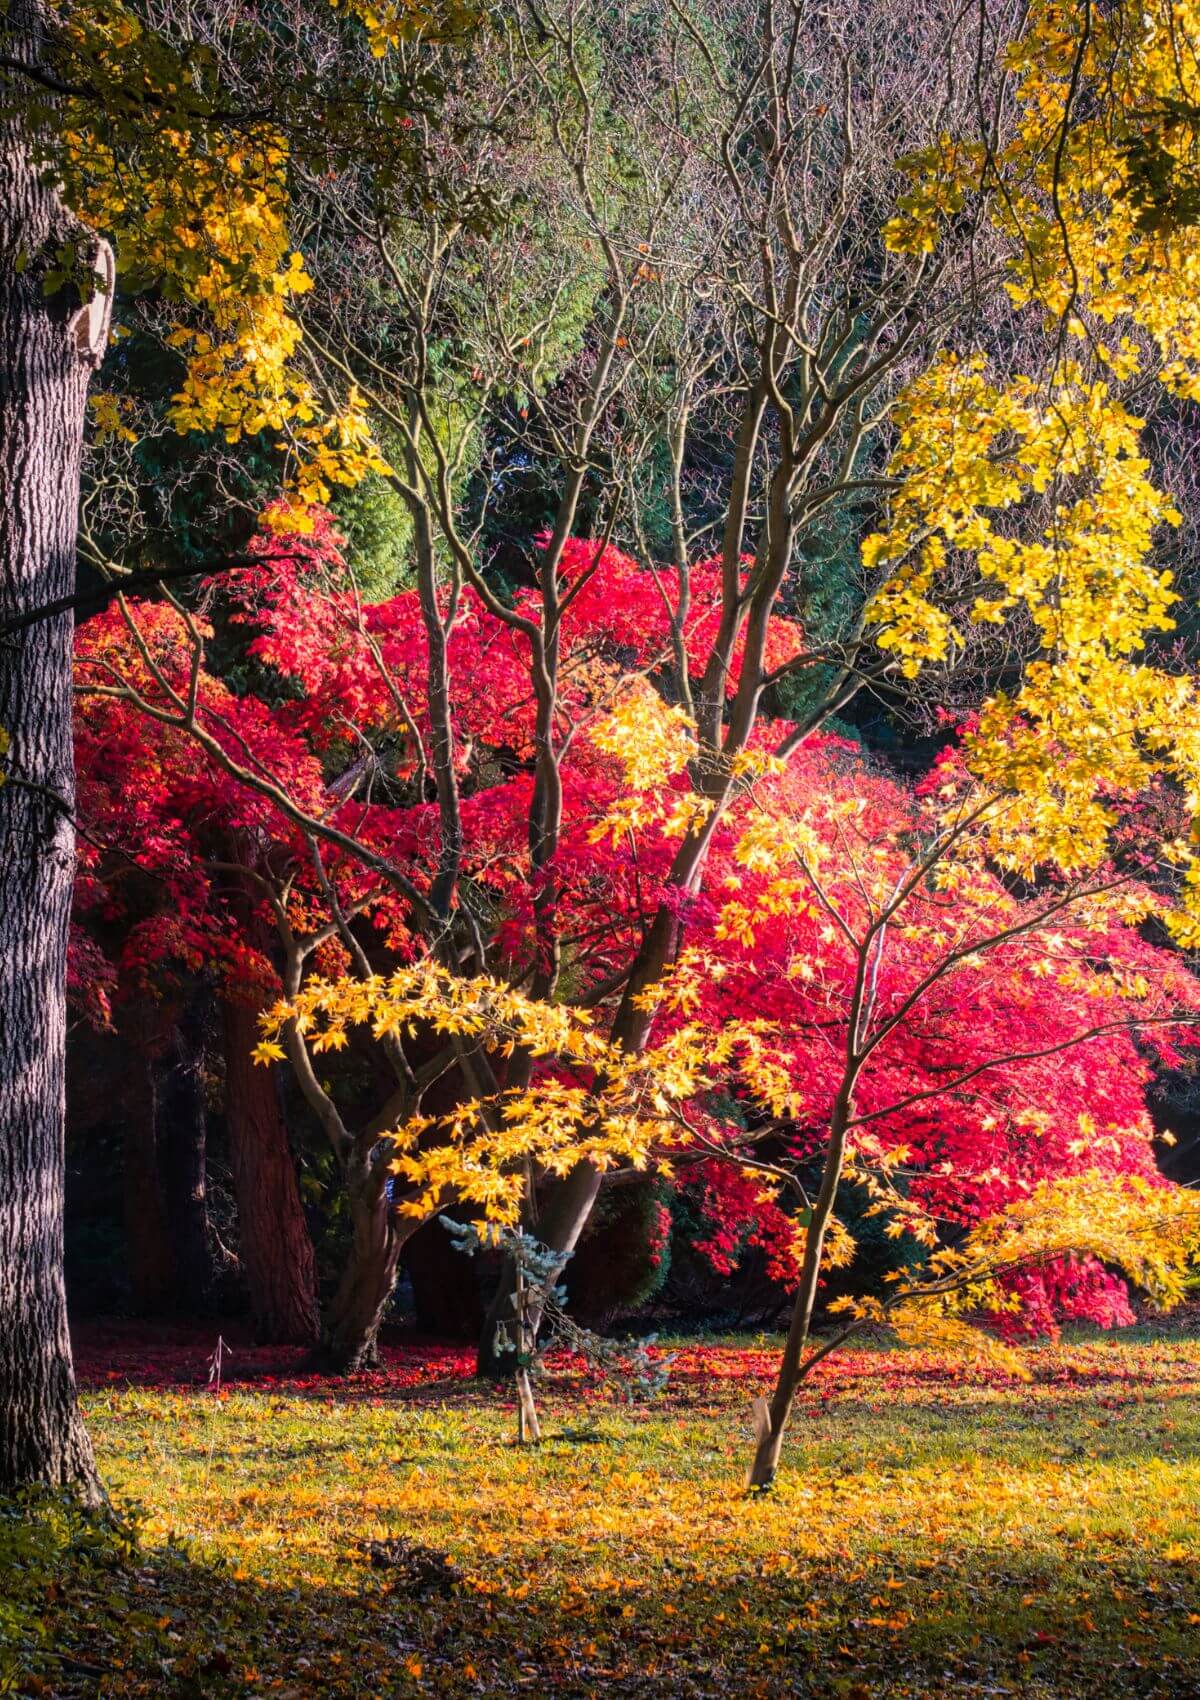 Thorp Perrow arboretum in England